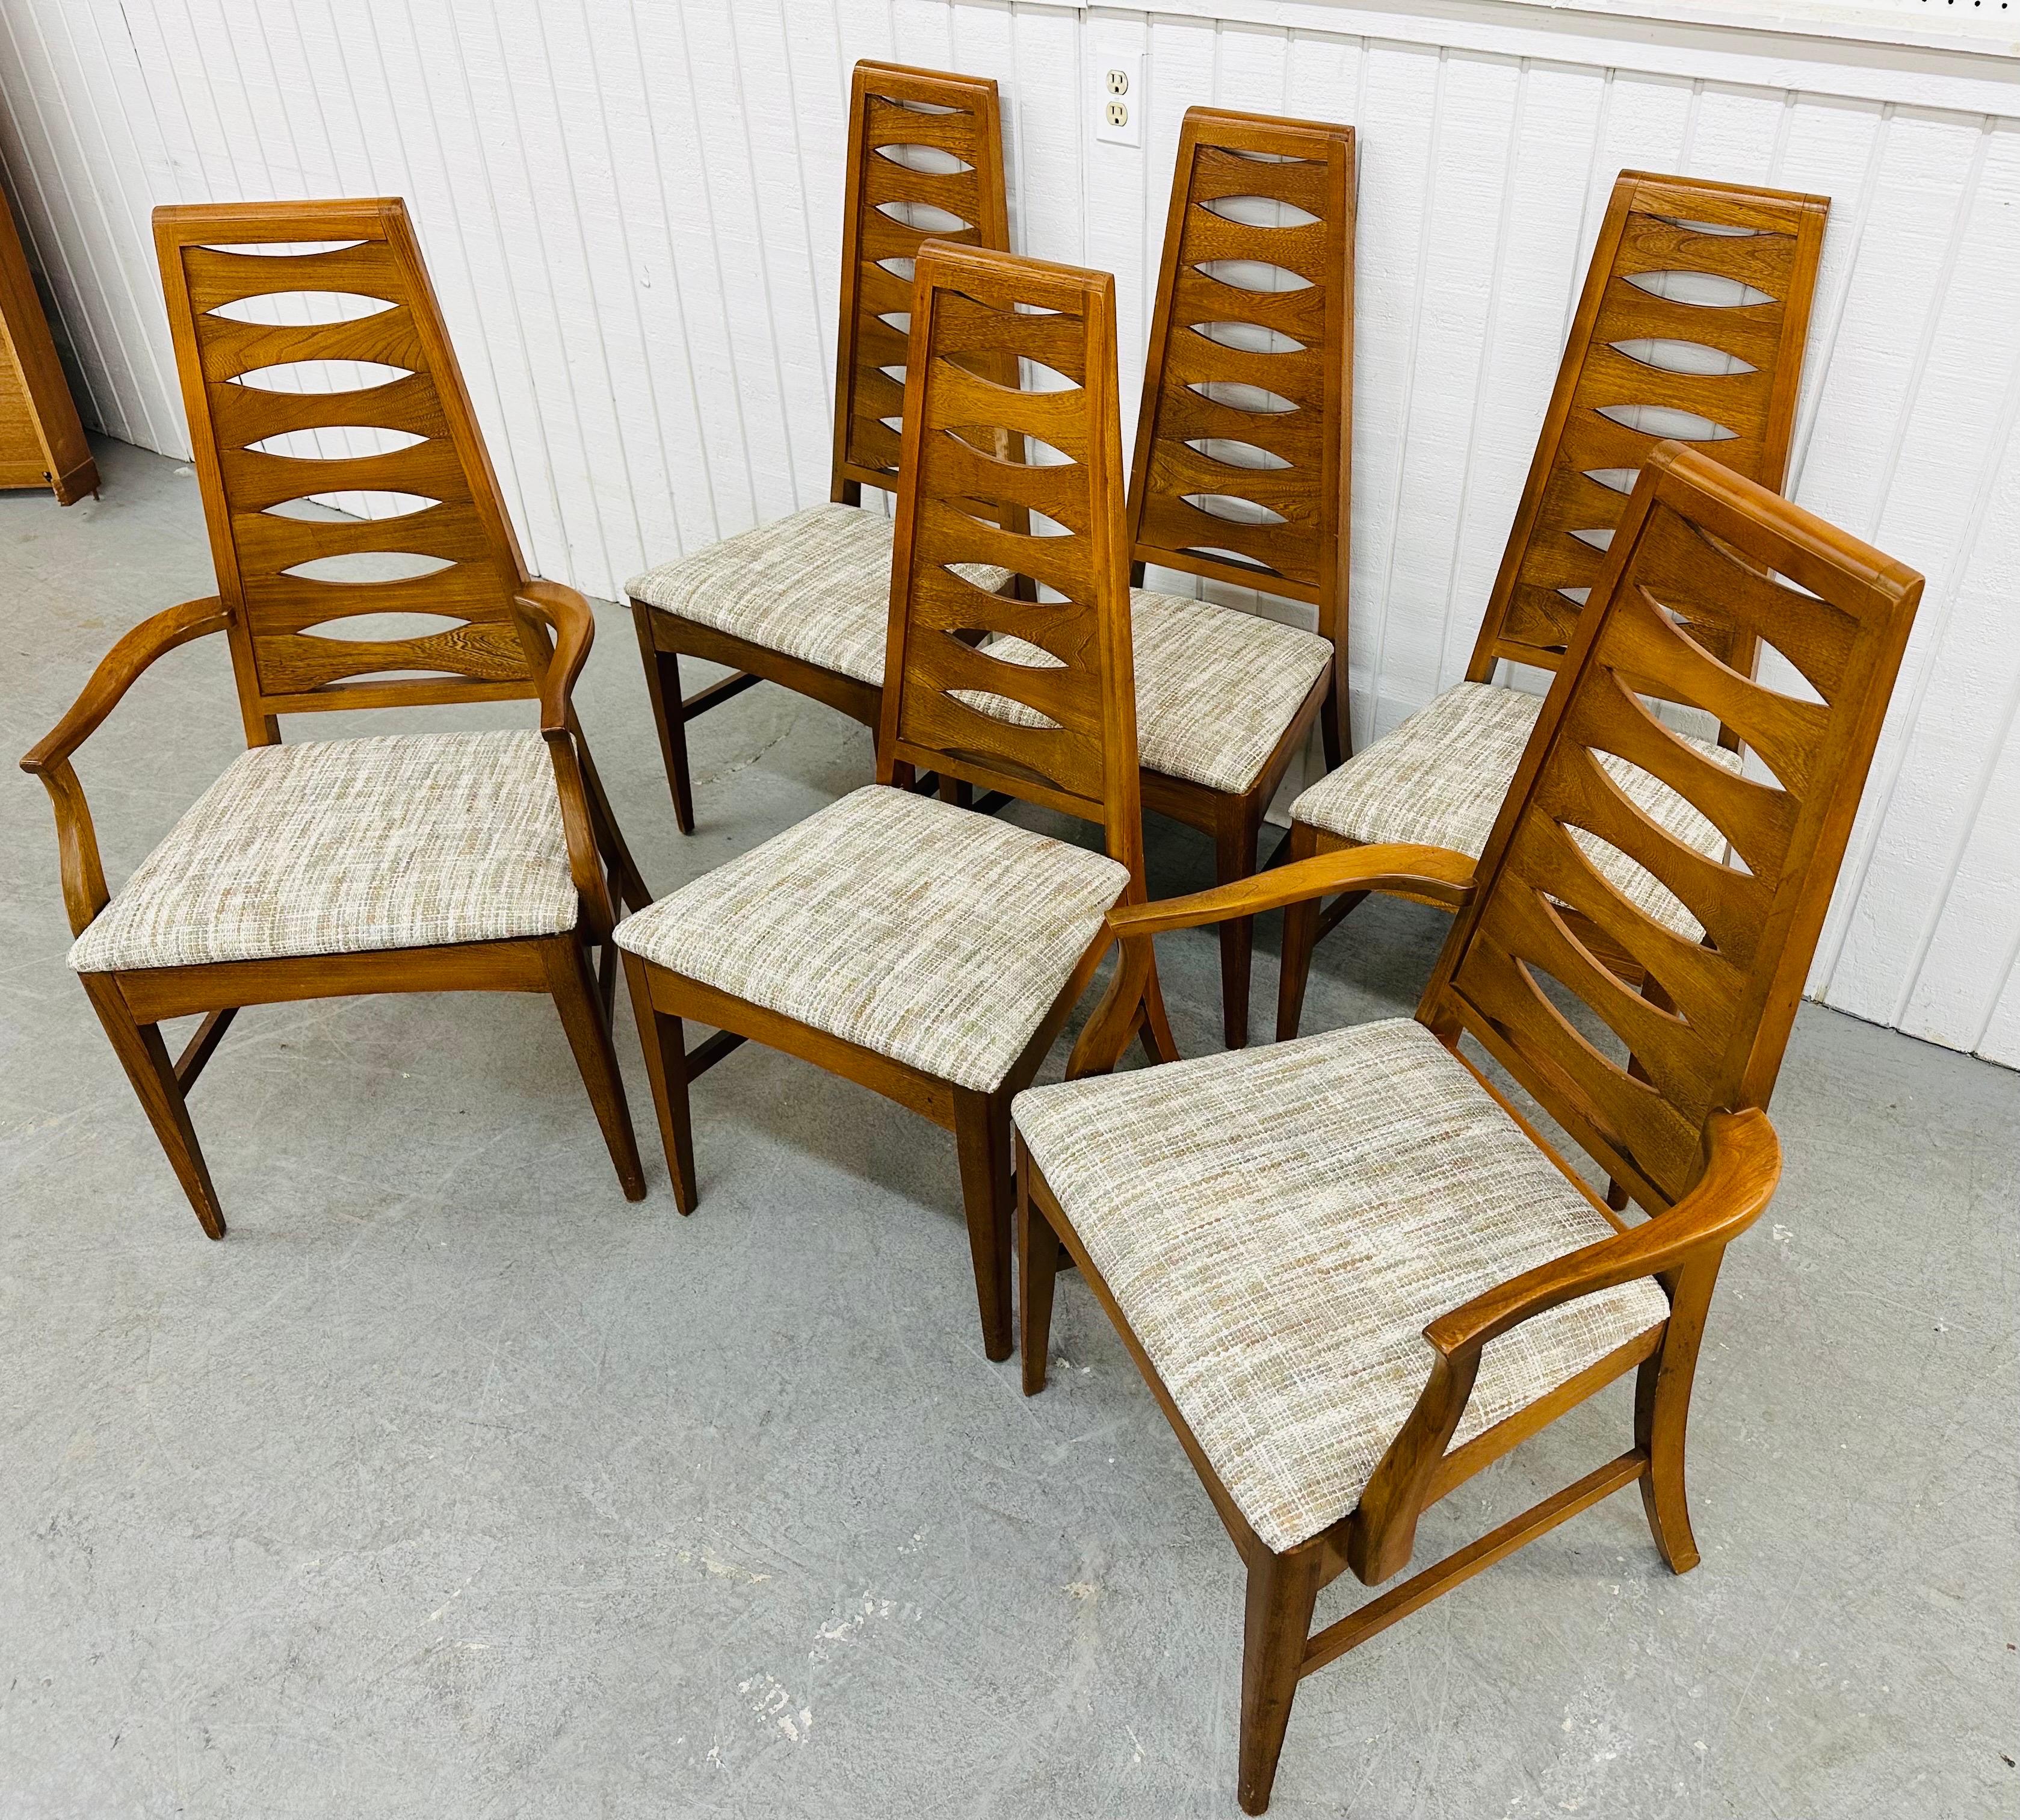 Diese Auflistung ist für eine Reihe von sechs Mid-Century Modern Young Manufacturing Walnuss Catseye Dining Chairs. Mit hoher Rückenlehne im Catseye-Design, zwei Sesseln, vier geraden Stühlen, neu gepolsterten Sitzen und einer schönen